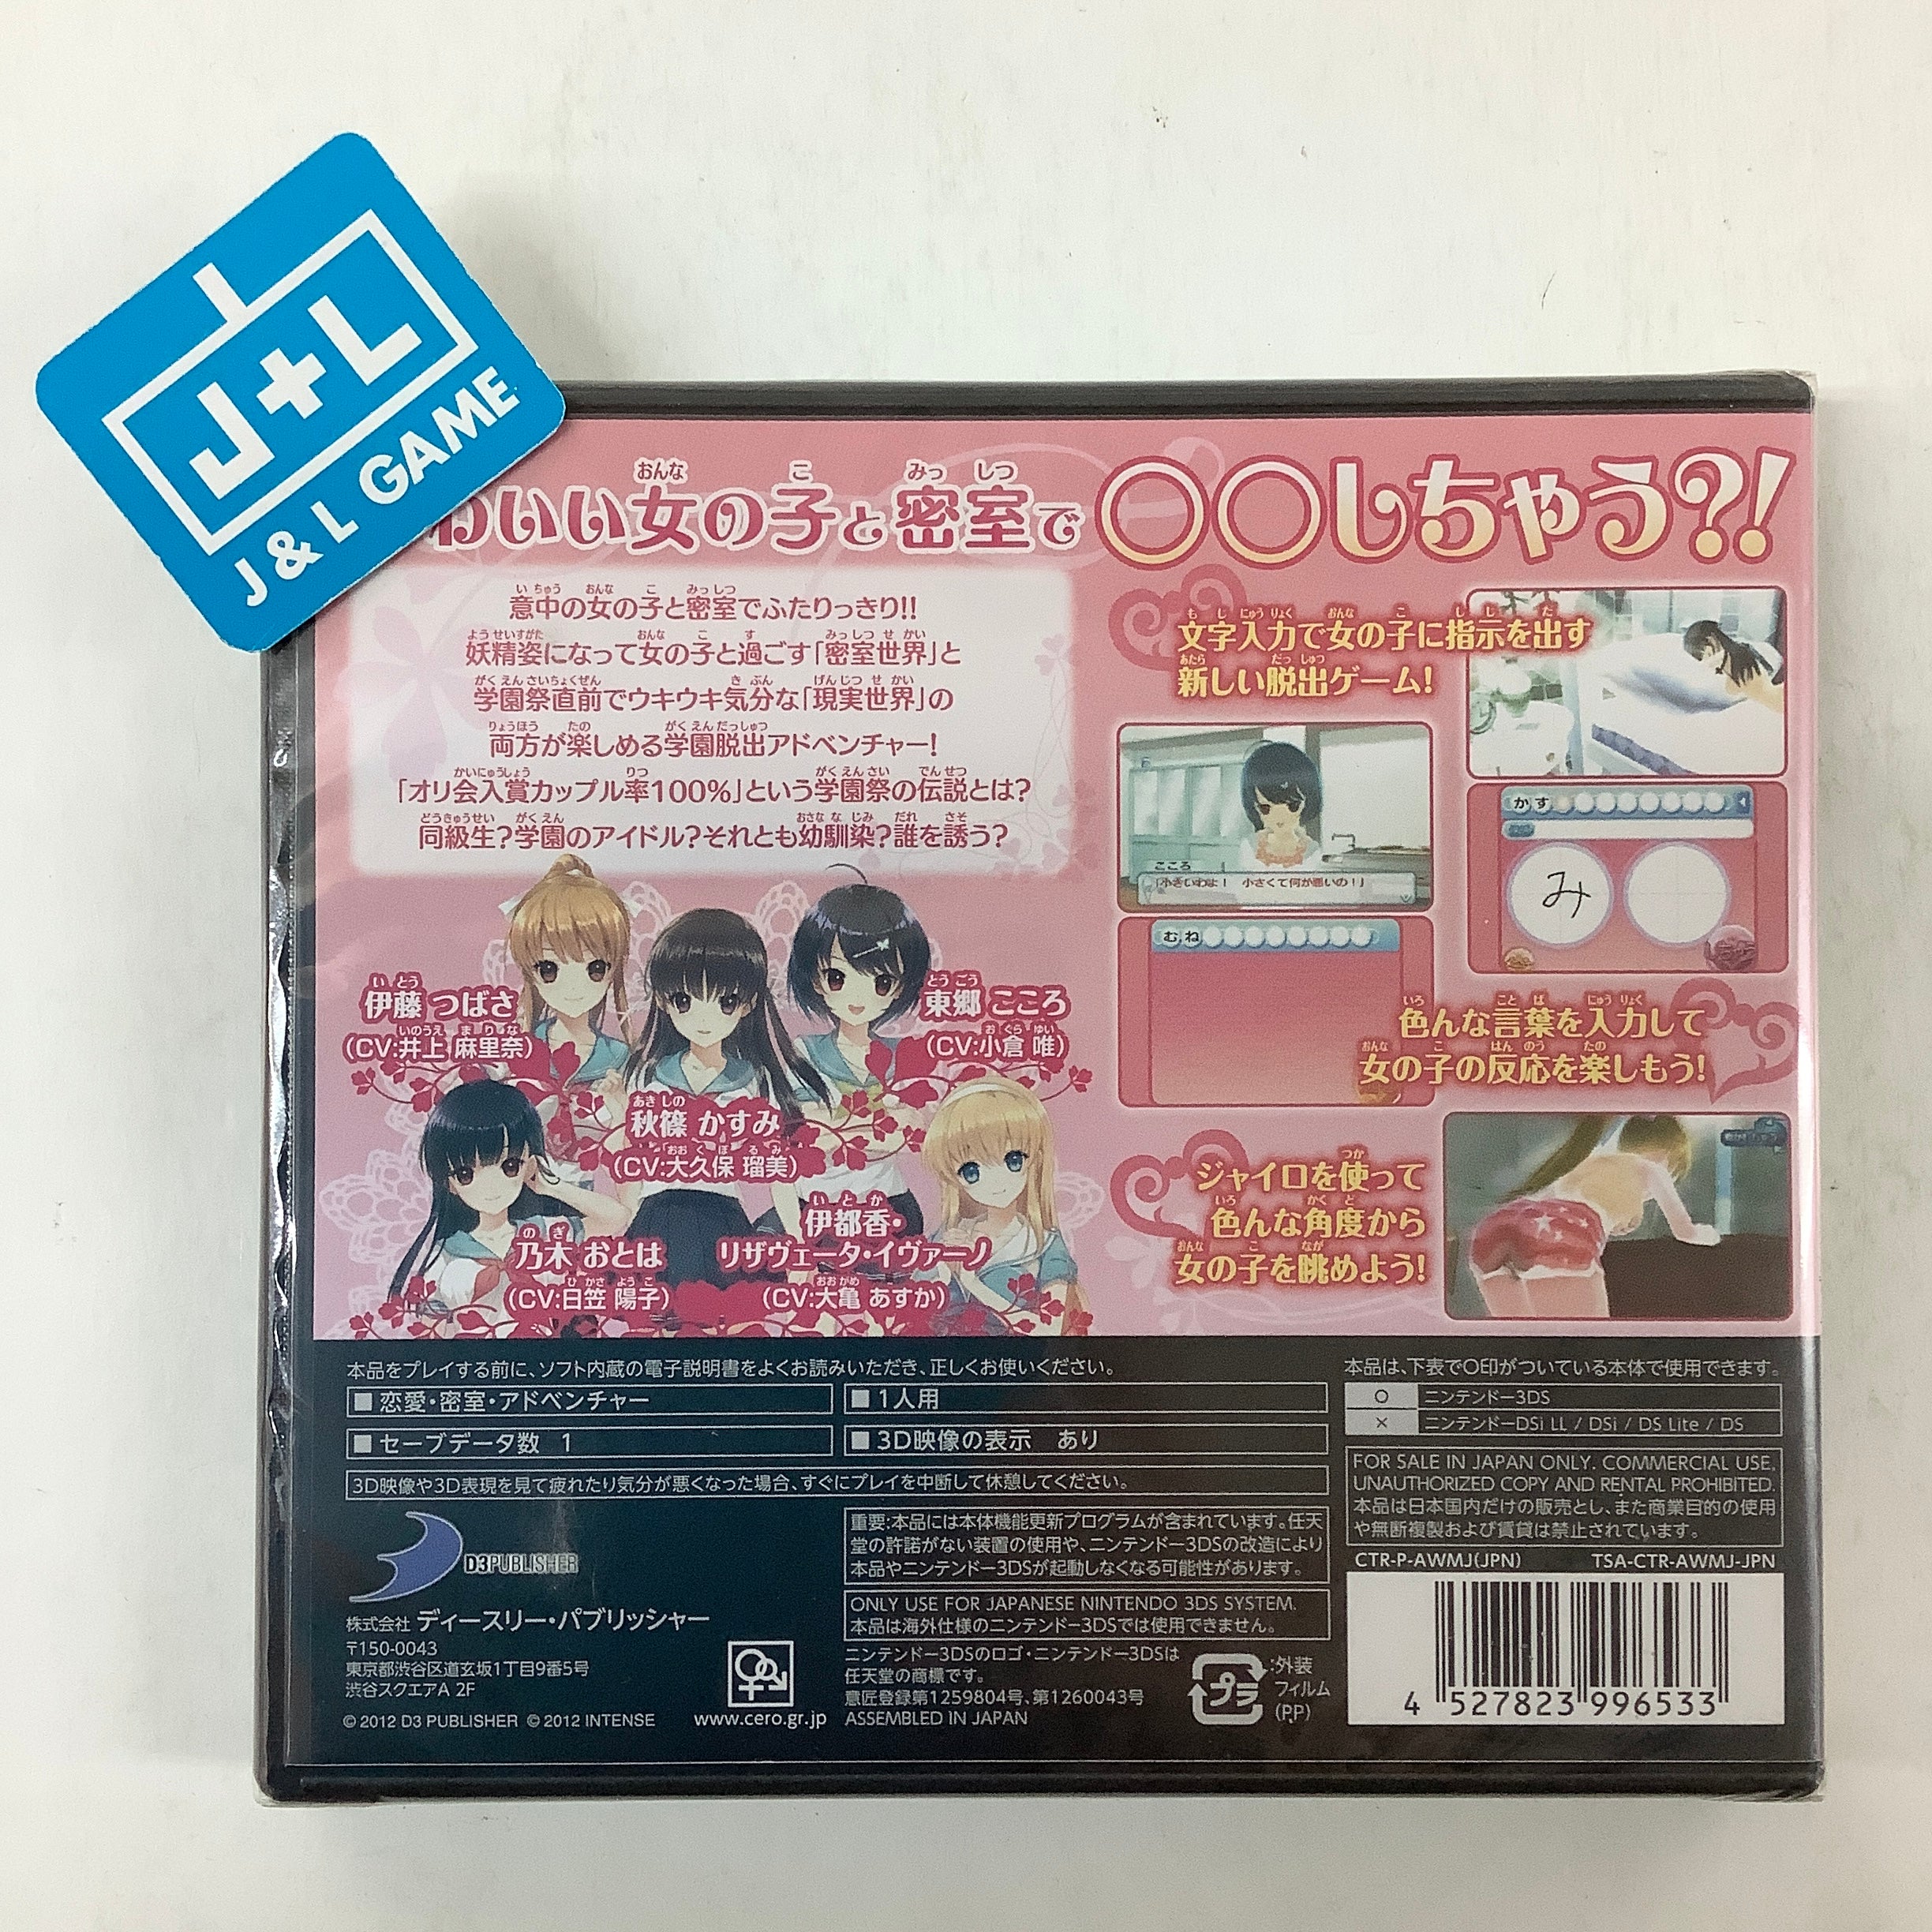 Onna no Ko to Misshitsu ni Itara **shichau Kamoshirenai - Nintendo 3DS (Japanese Import) Video Games D3Publisher   